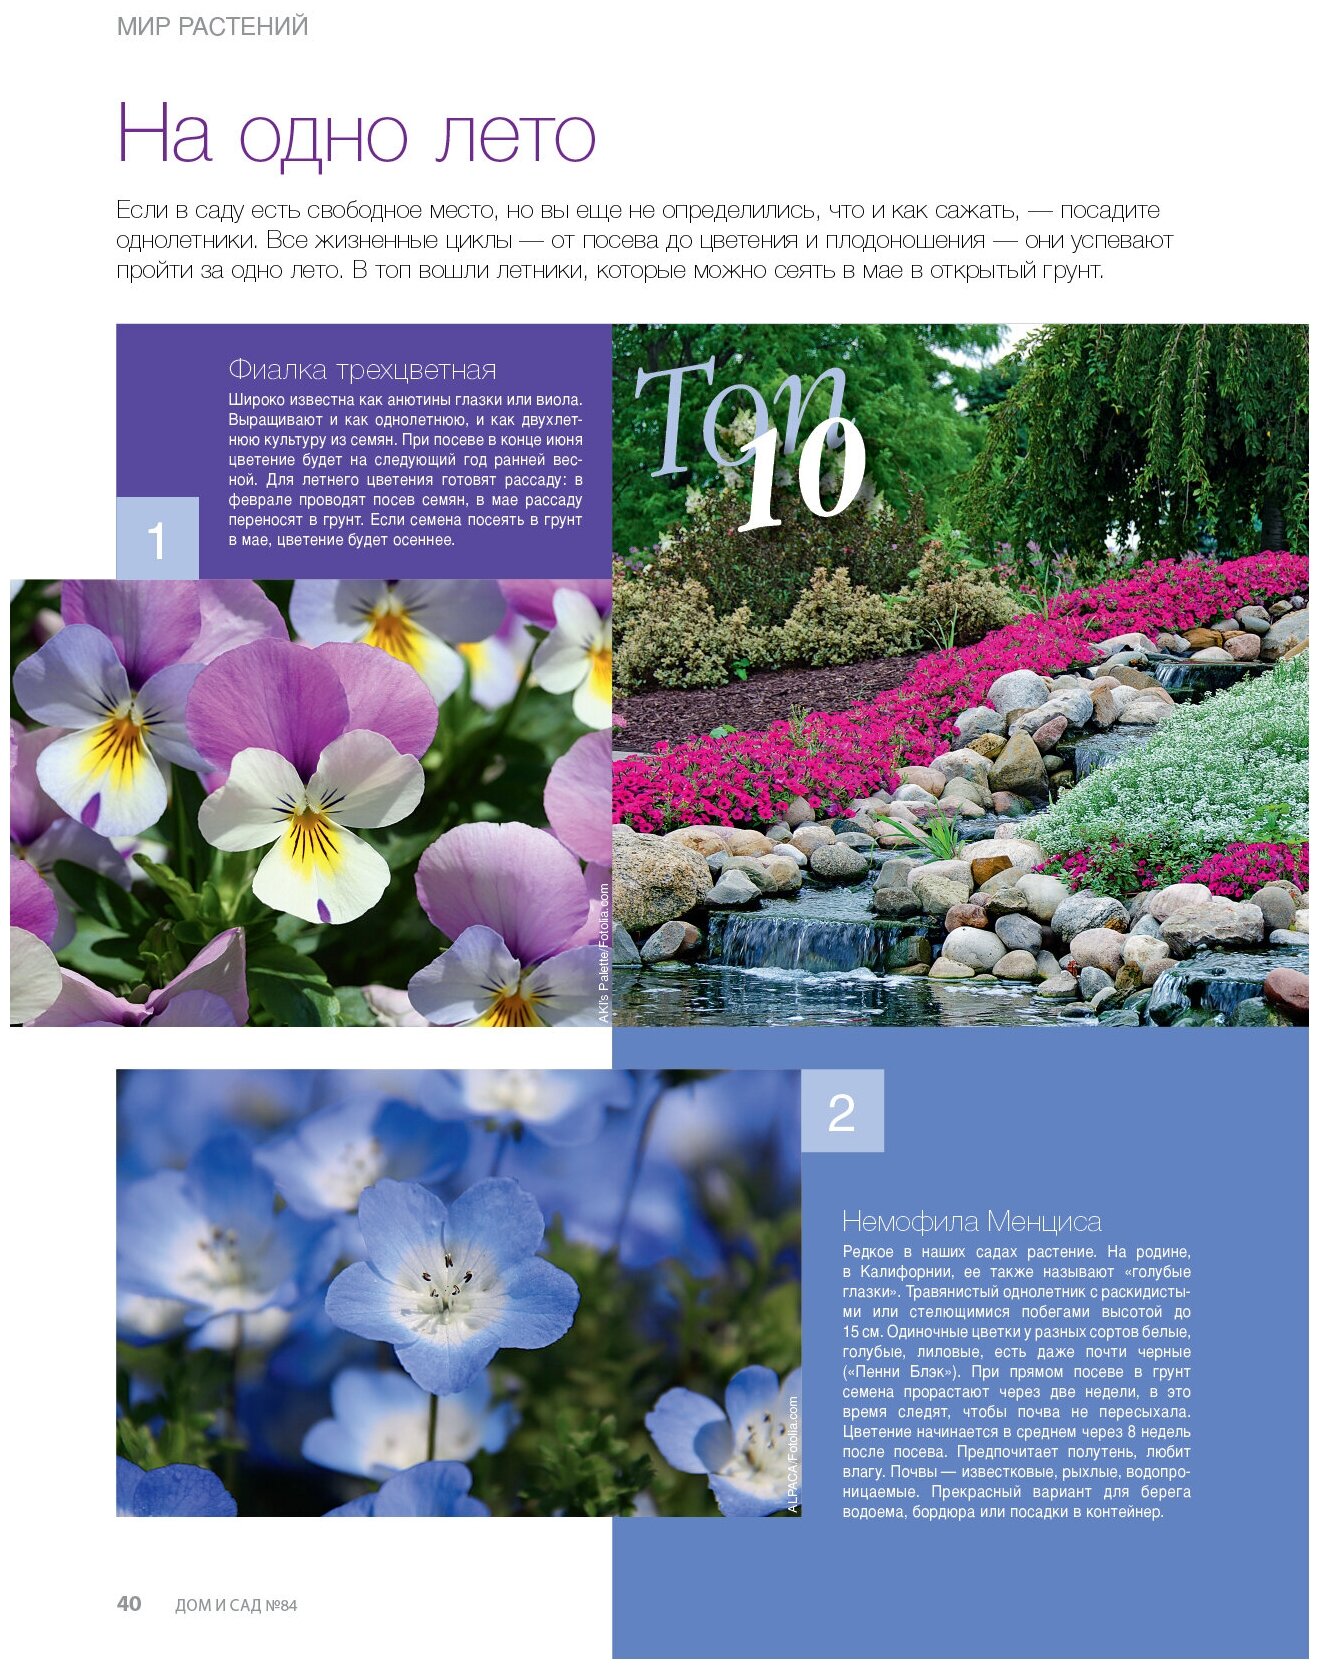 Журнал Дом и сад №3 (84) 2015